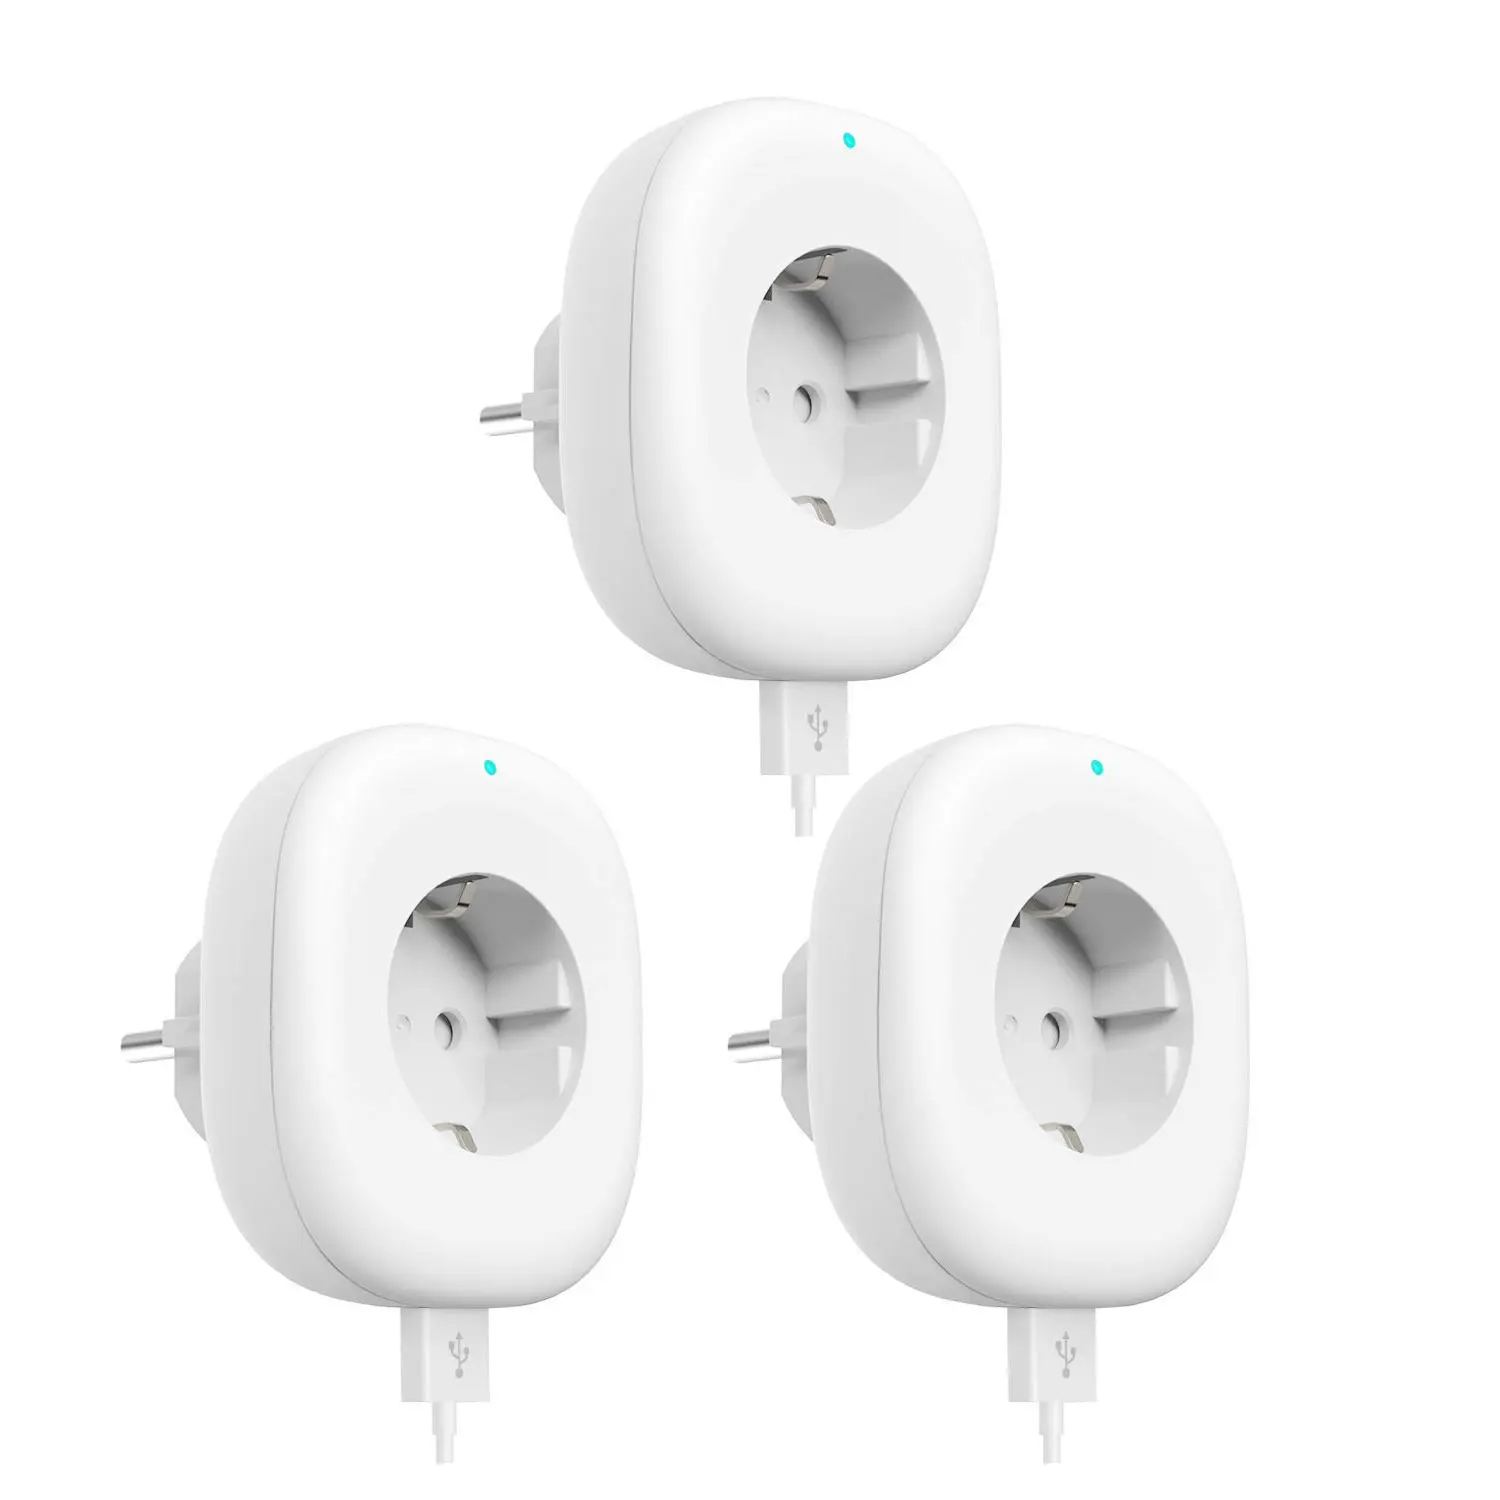 Wifi умная розетка EU power Plug Беспроводная мобильное приложение Дистанционное управление USB Выход работает с Alexa Google Home Smart life tuya 10A - Цвет: 3 pack